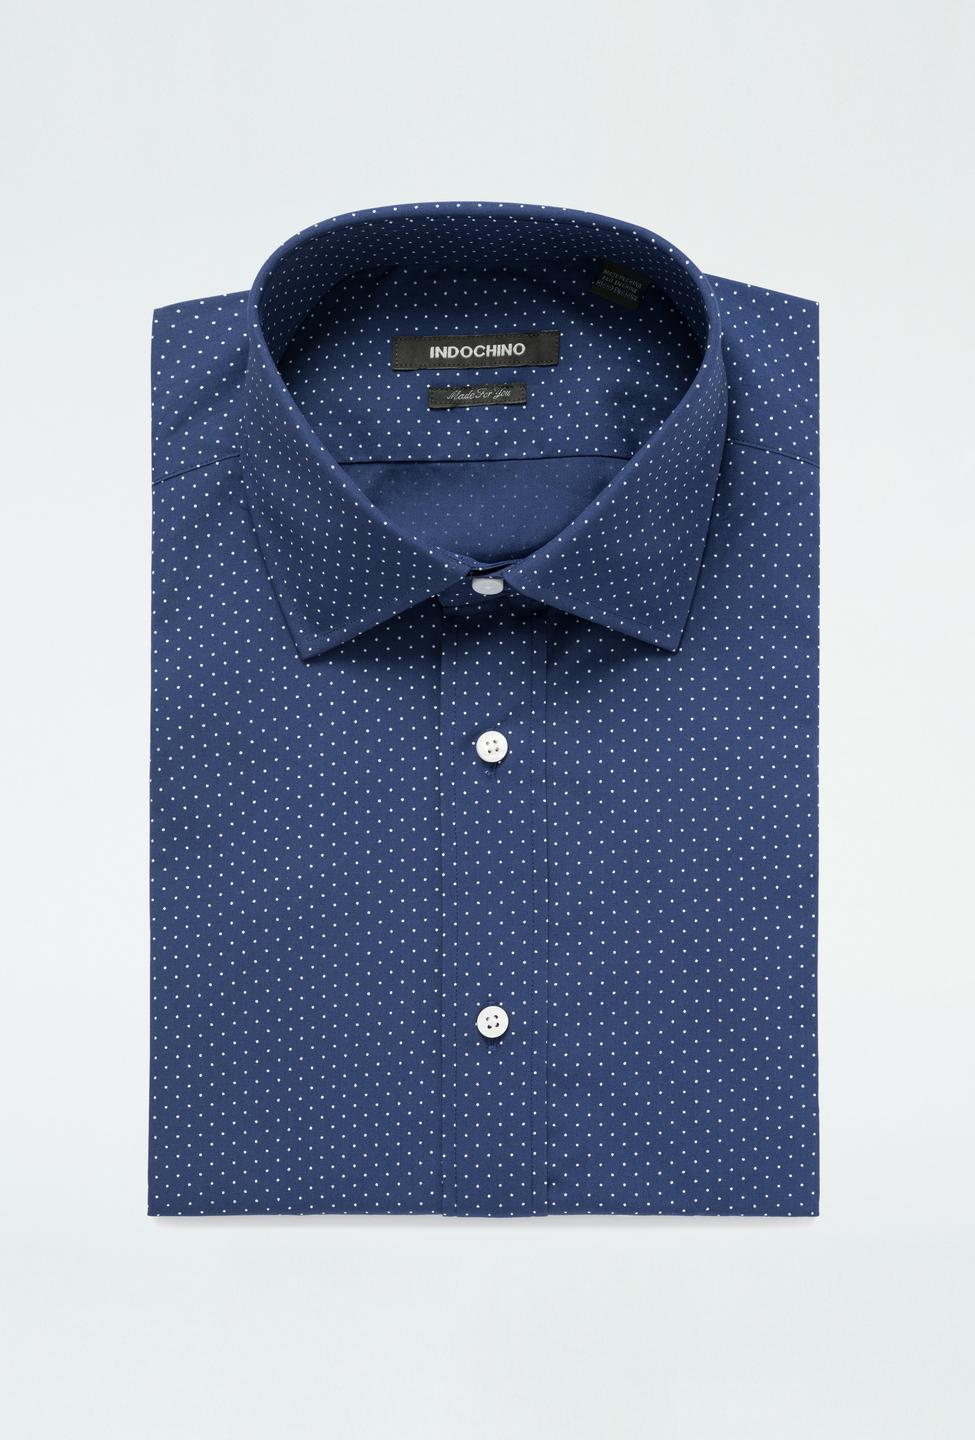 Blue shirt - Hayton Pattern Design from Premium Indochino Collection